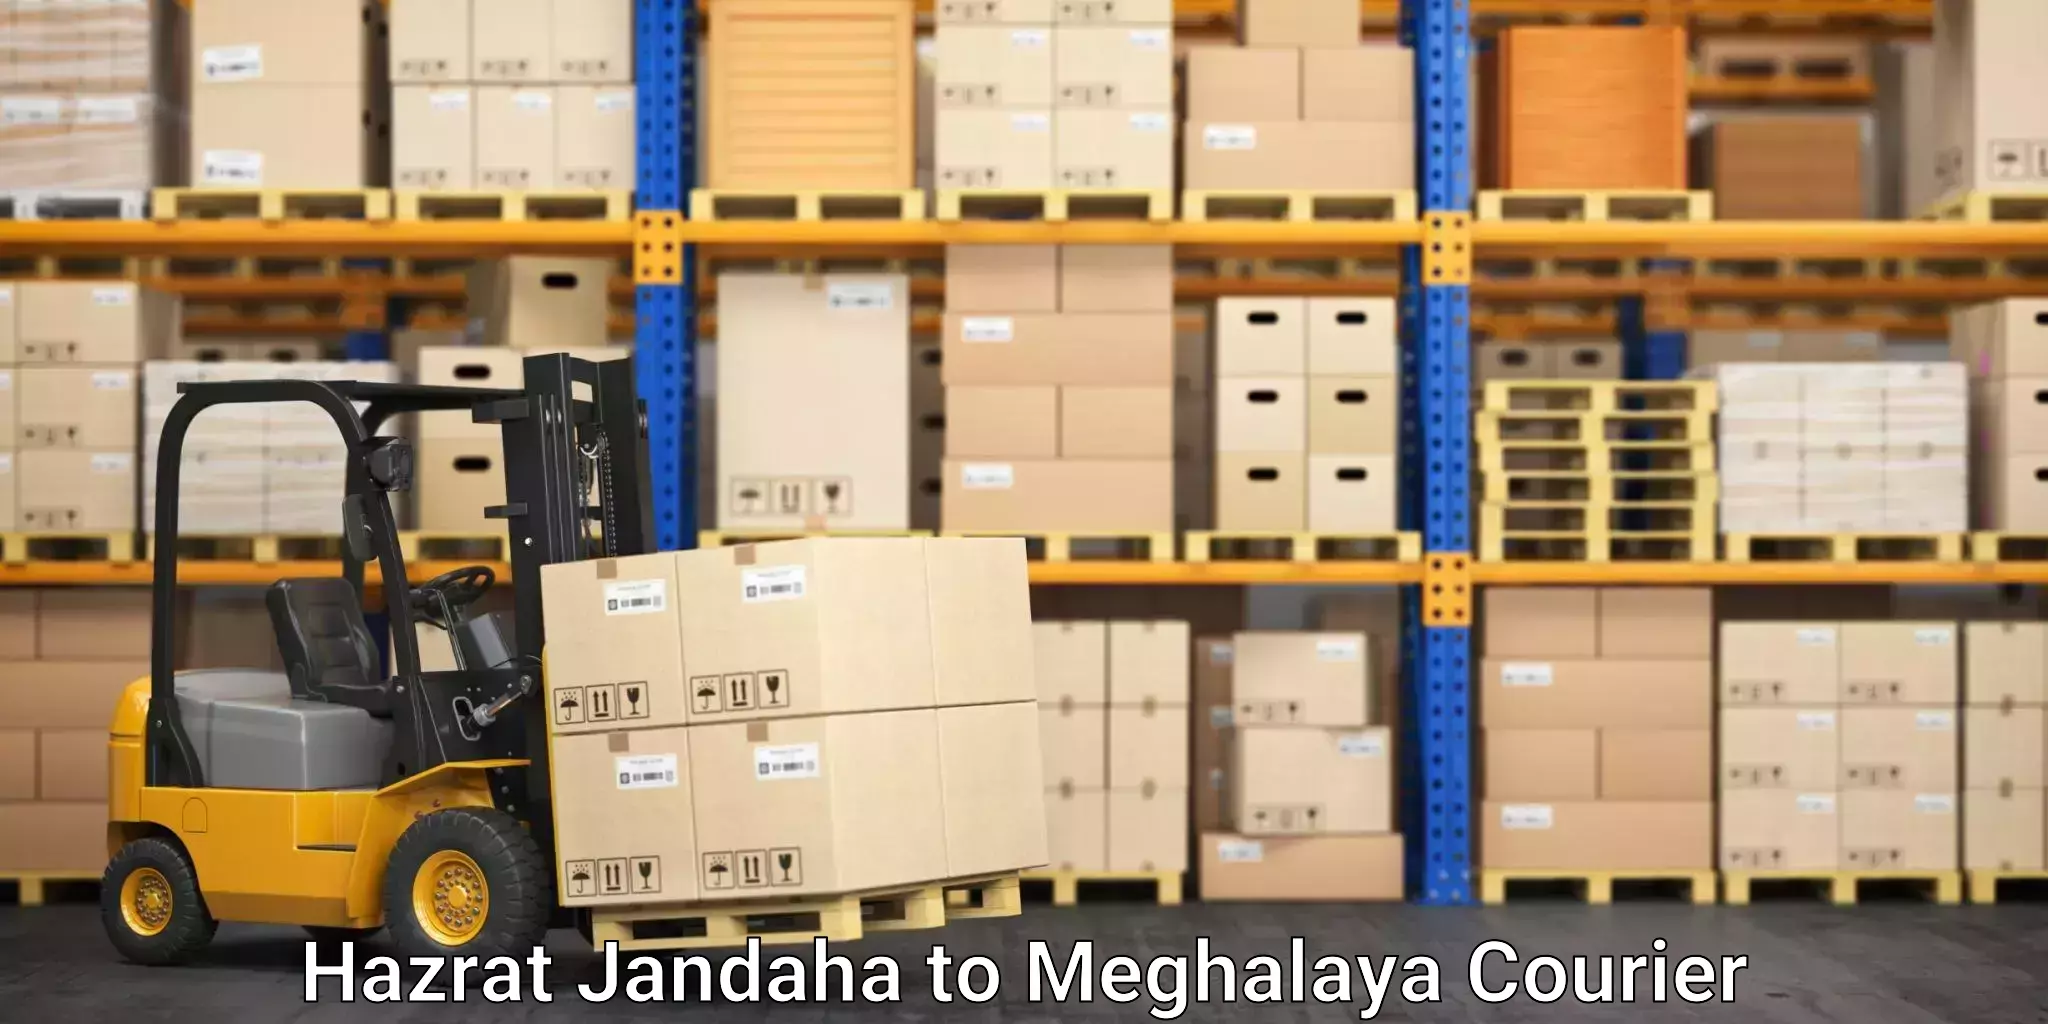 Efficient moving company Hazrat Jandaha to Shillong